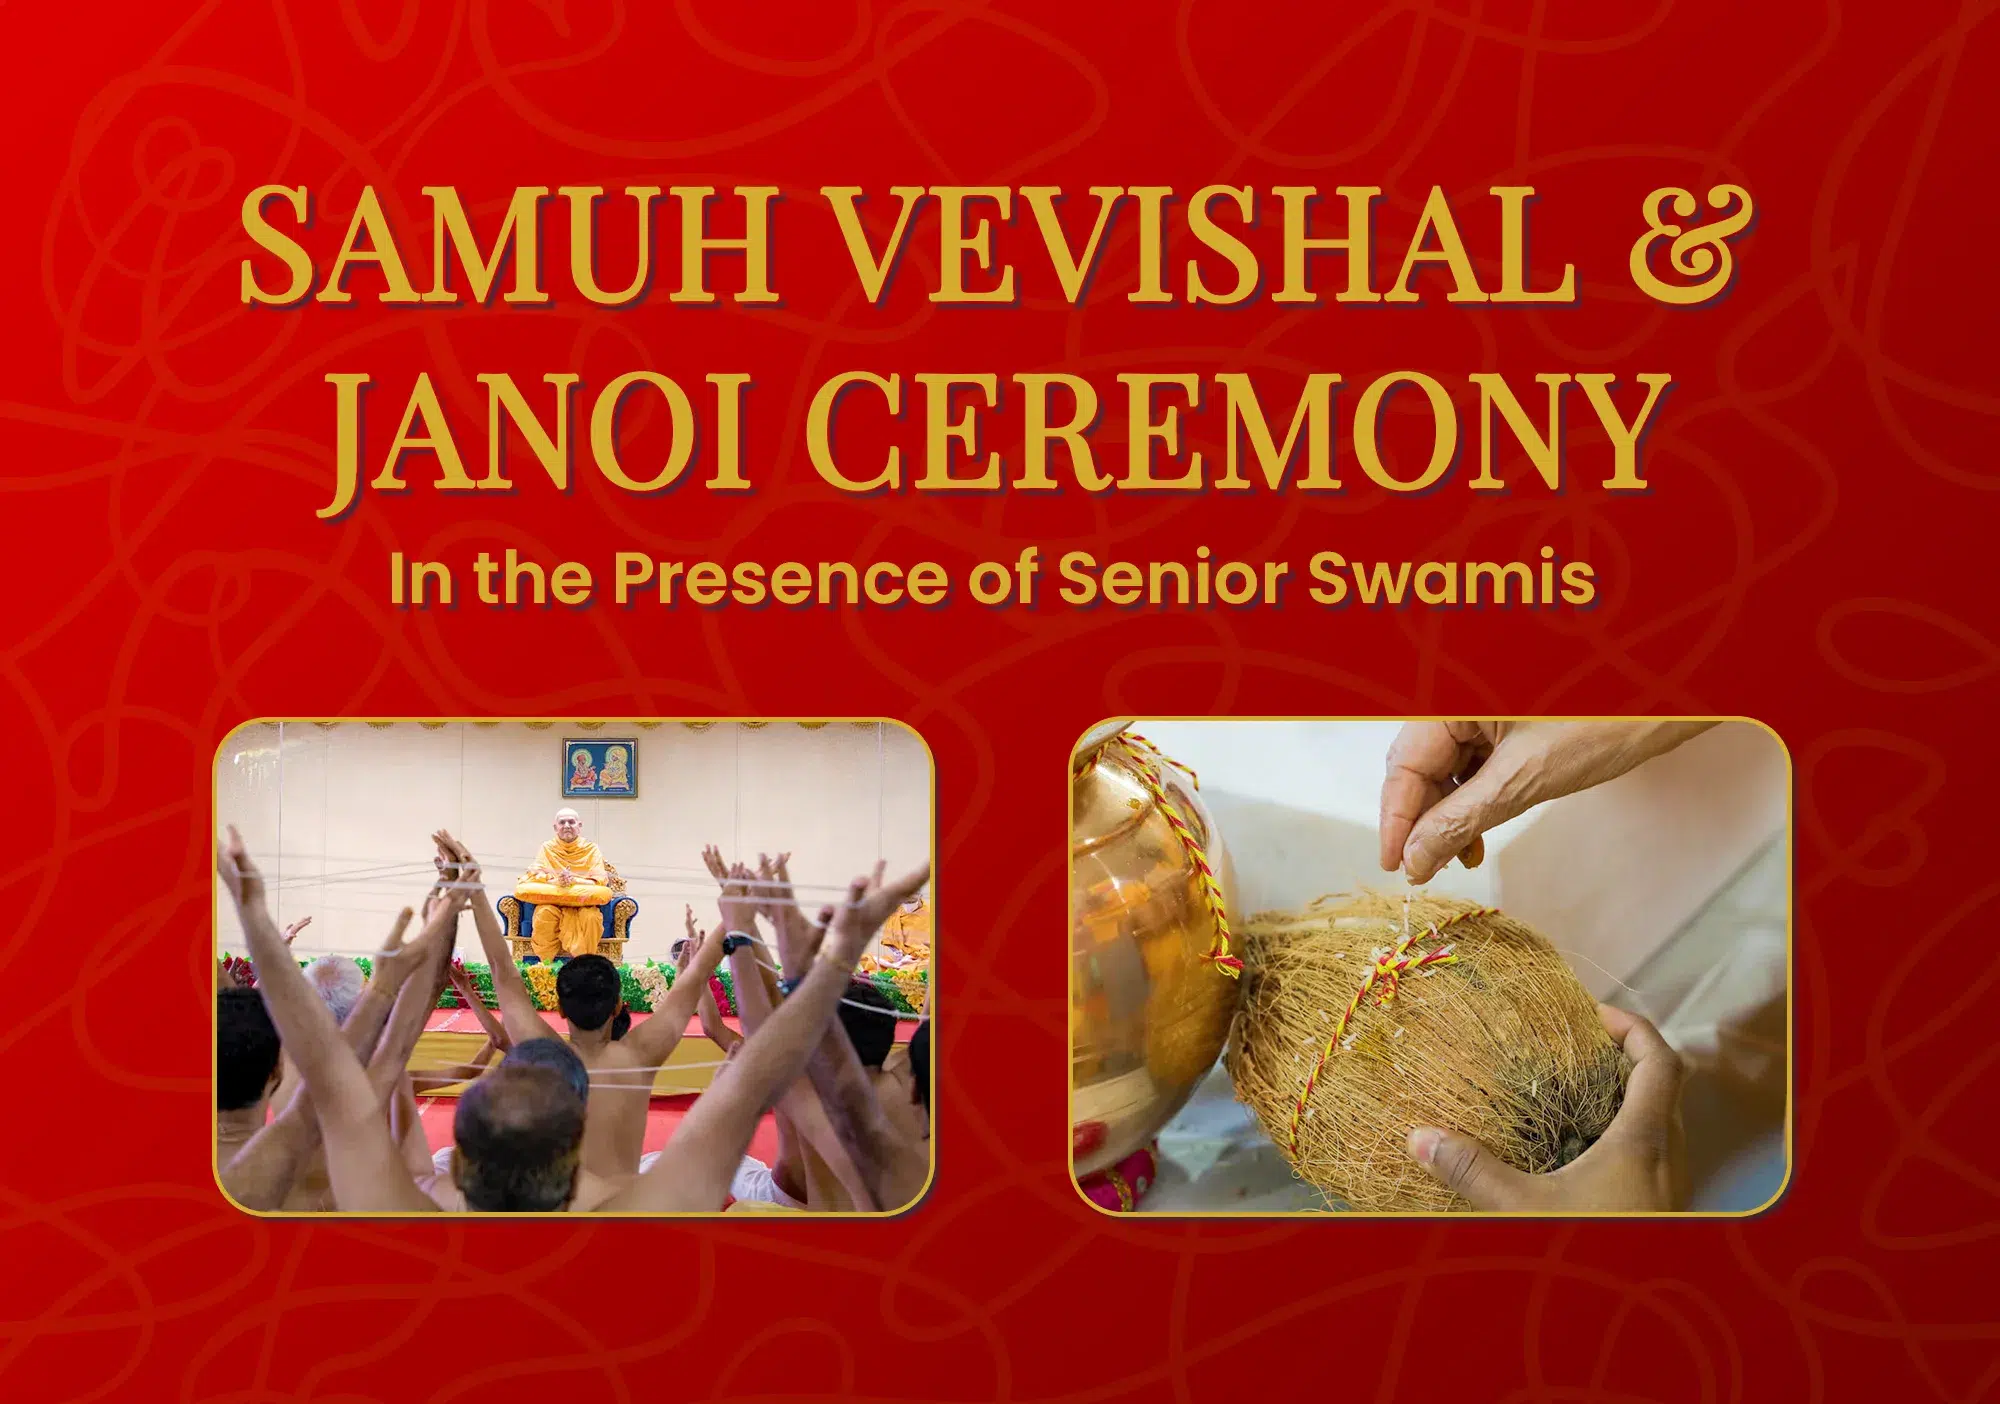 Samuh Vevishal & Janoi Ceremony